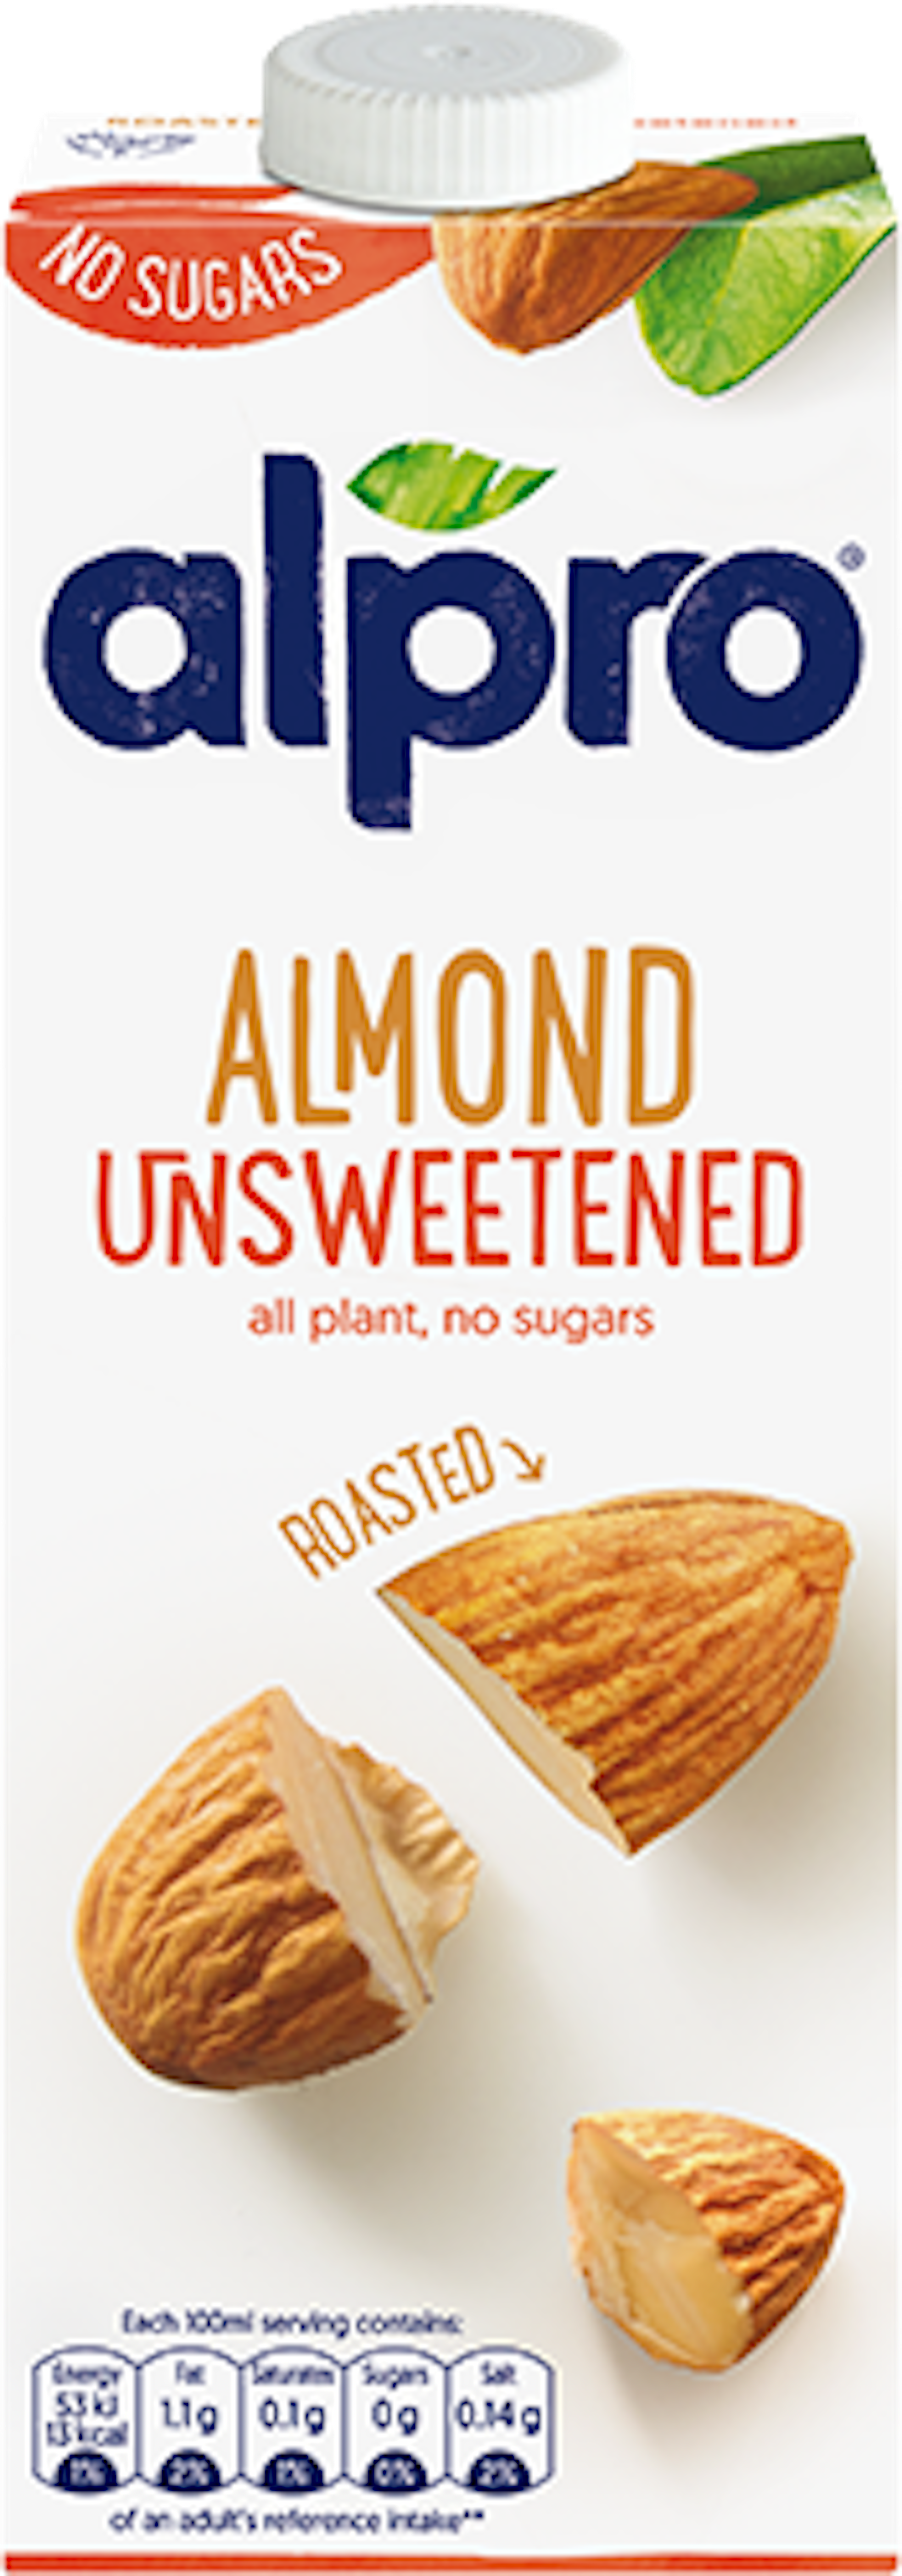 Almond Roasted No Sugars